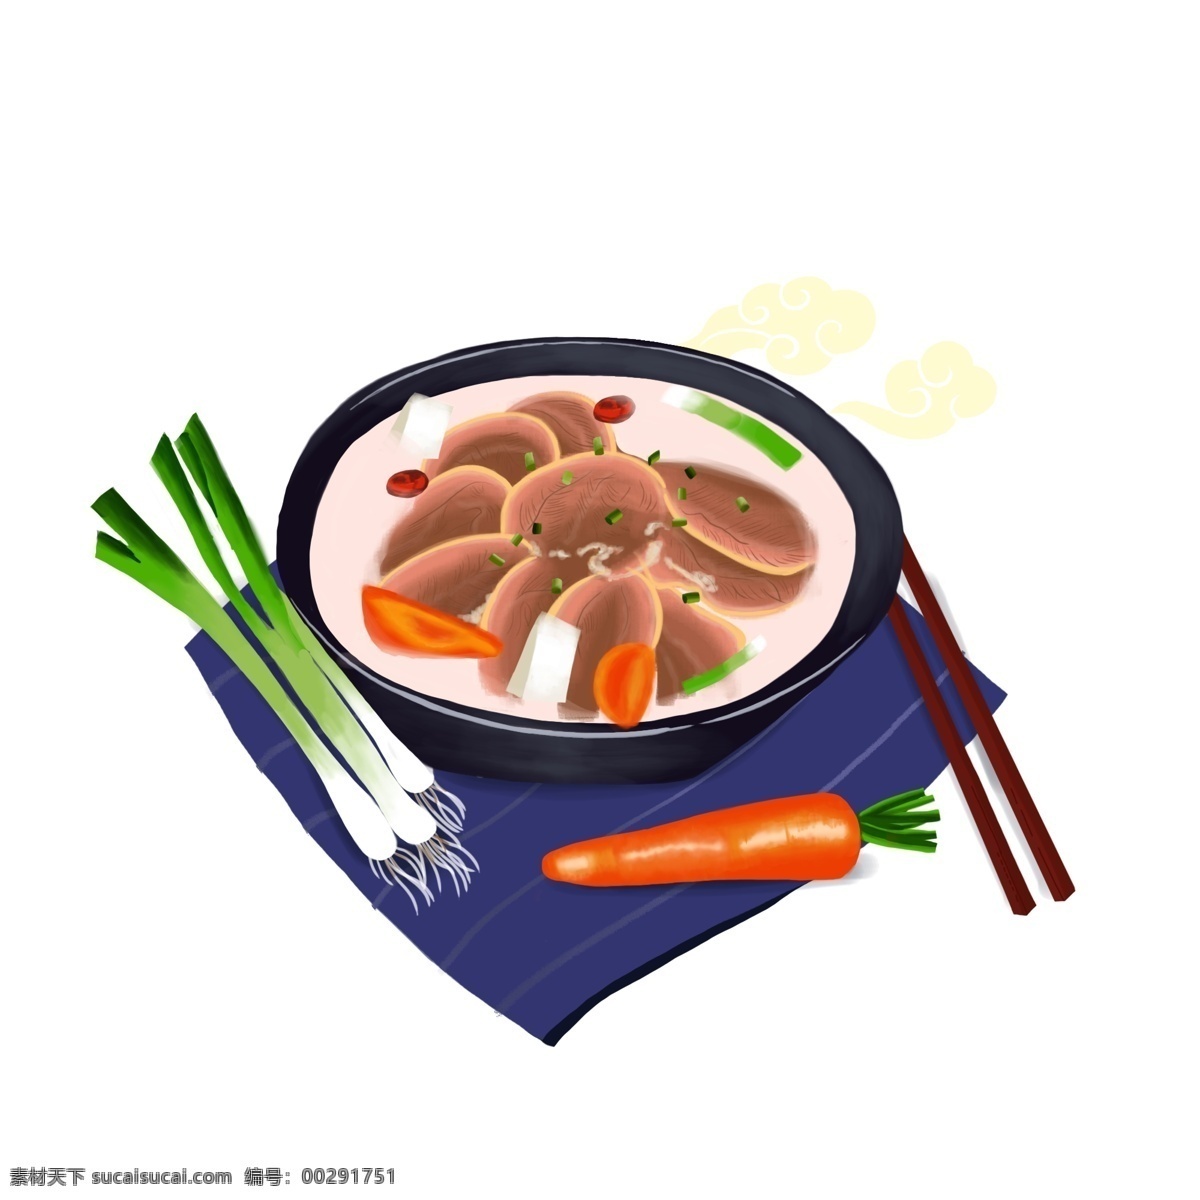 冬至 暖身 羊肉 汤 手绘 冬季 羊肉汤 碗 中国风